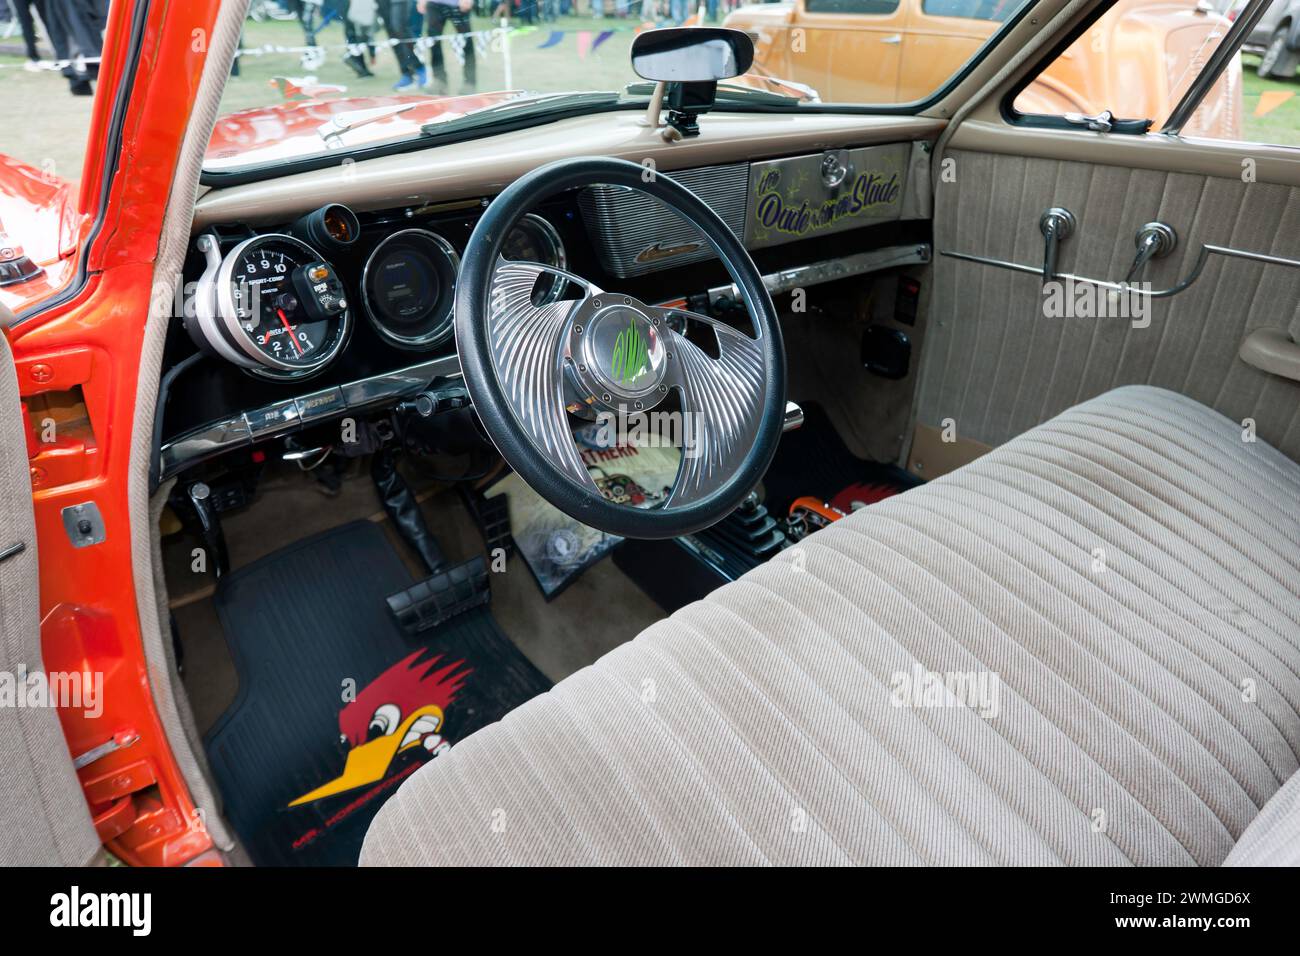 Vue intérieure d'un rare Studebaker commander Starlight coupé Hot Rod, exposé au Yokohama Shift and Drift zone du Festival de Silverstone 2023 Banque D'Images